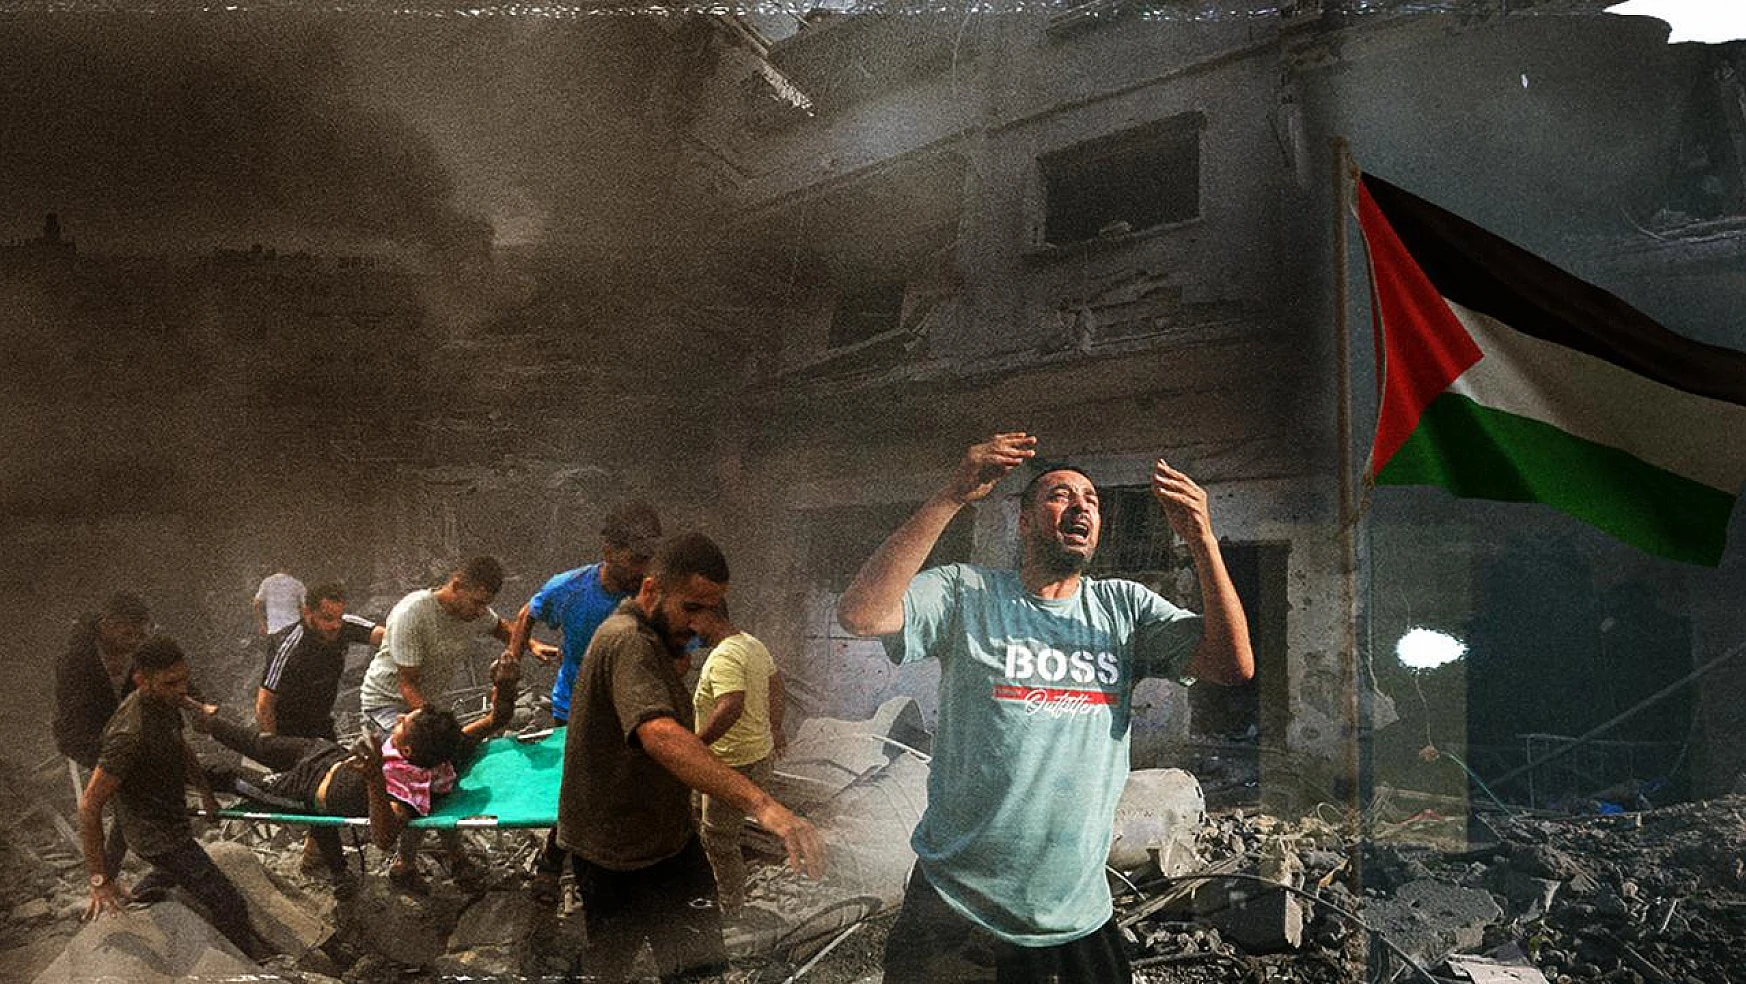 İngiltereli dini liderden Gazze için ateşkes çağrısı: 'Ahlaki bir çığlık'